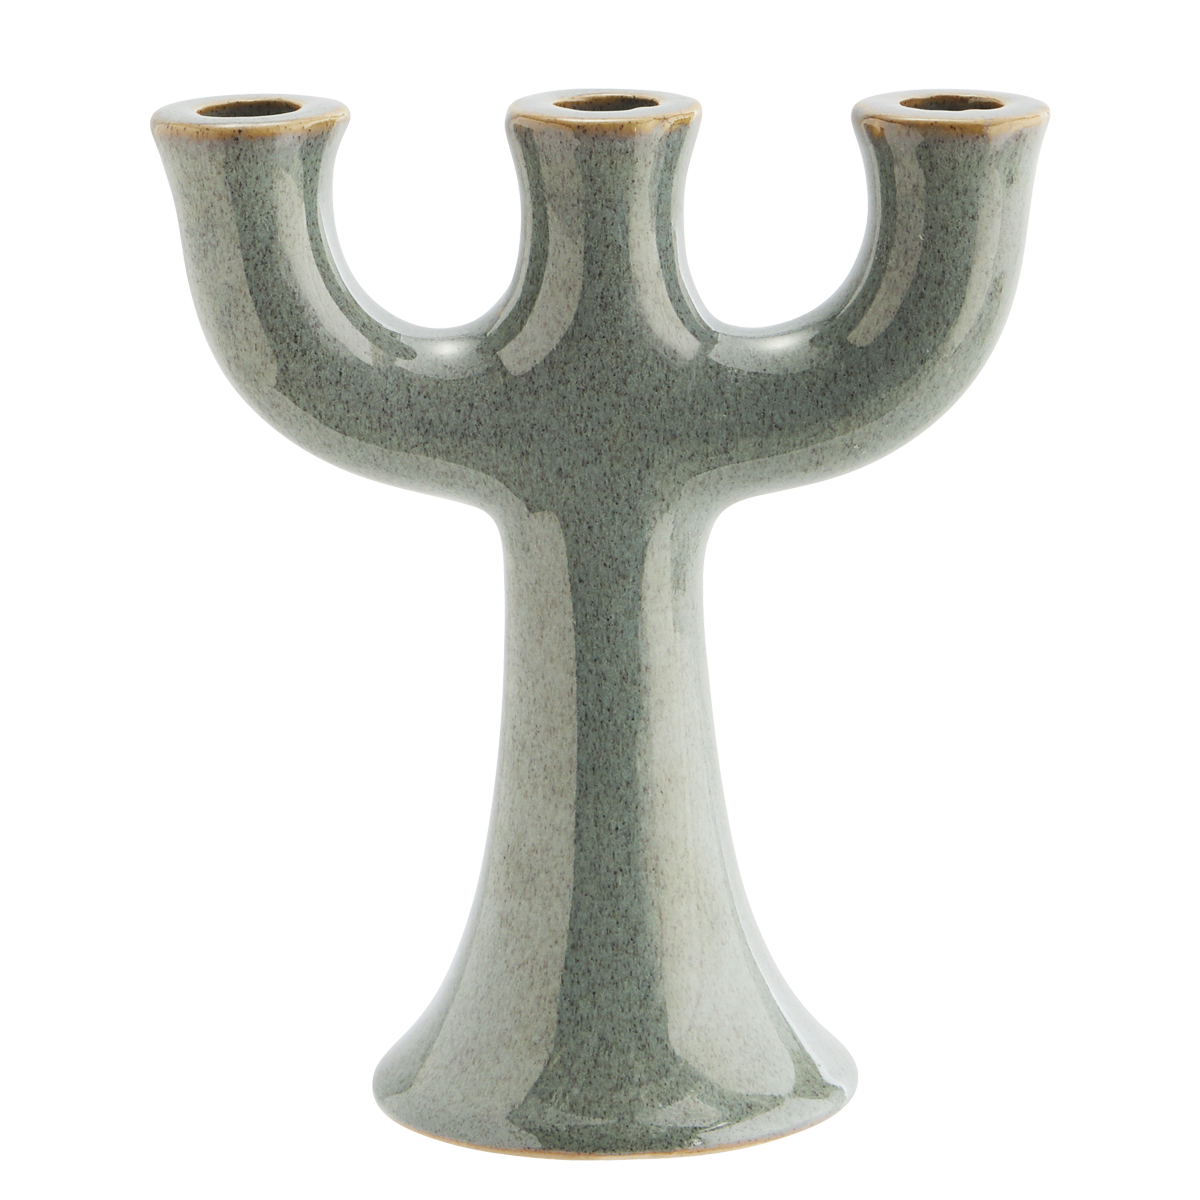 Stoneware candle holder